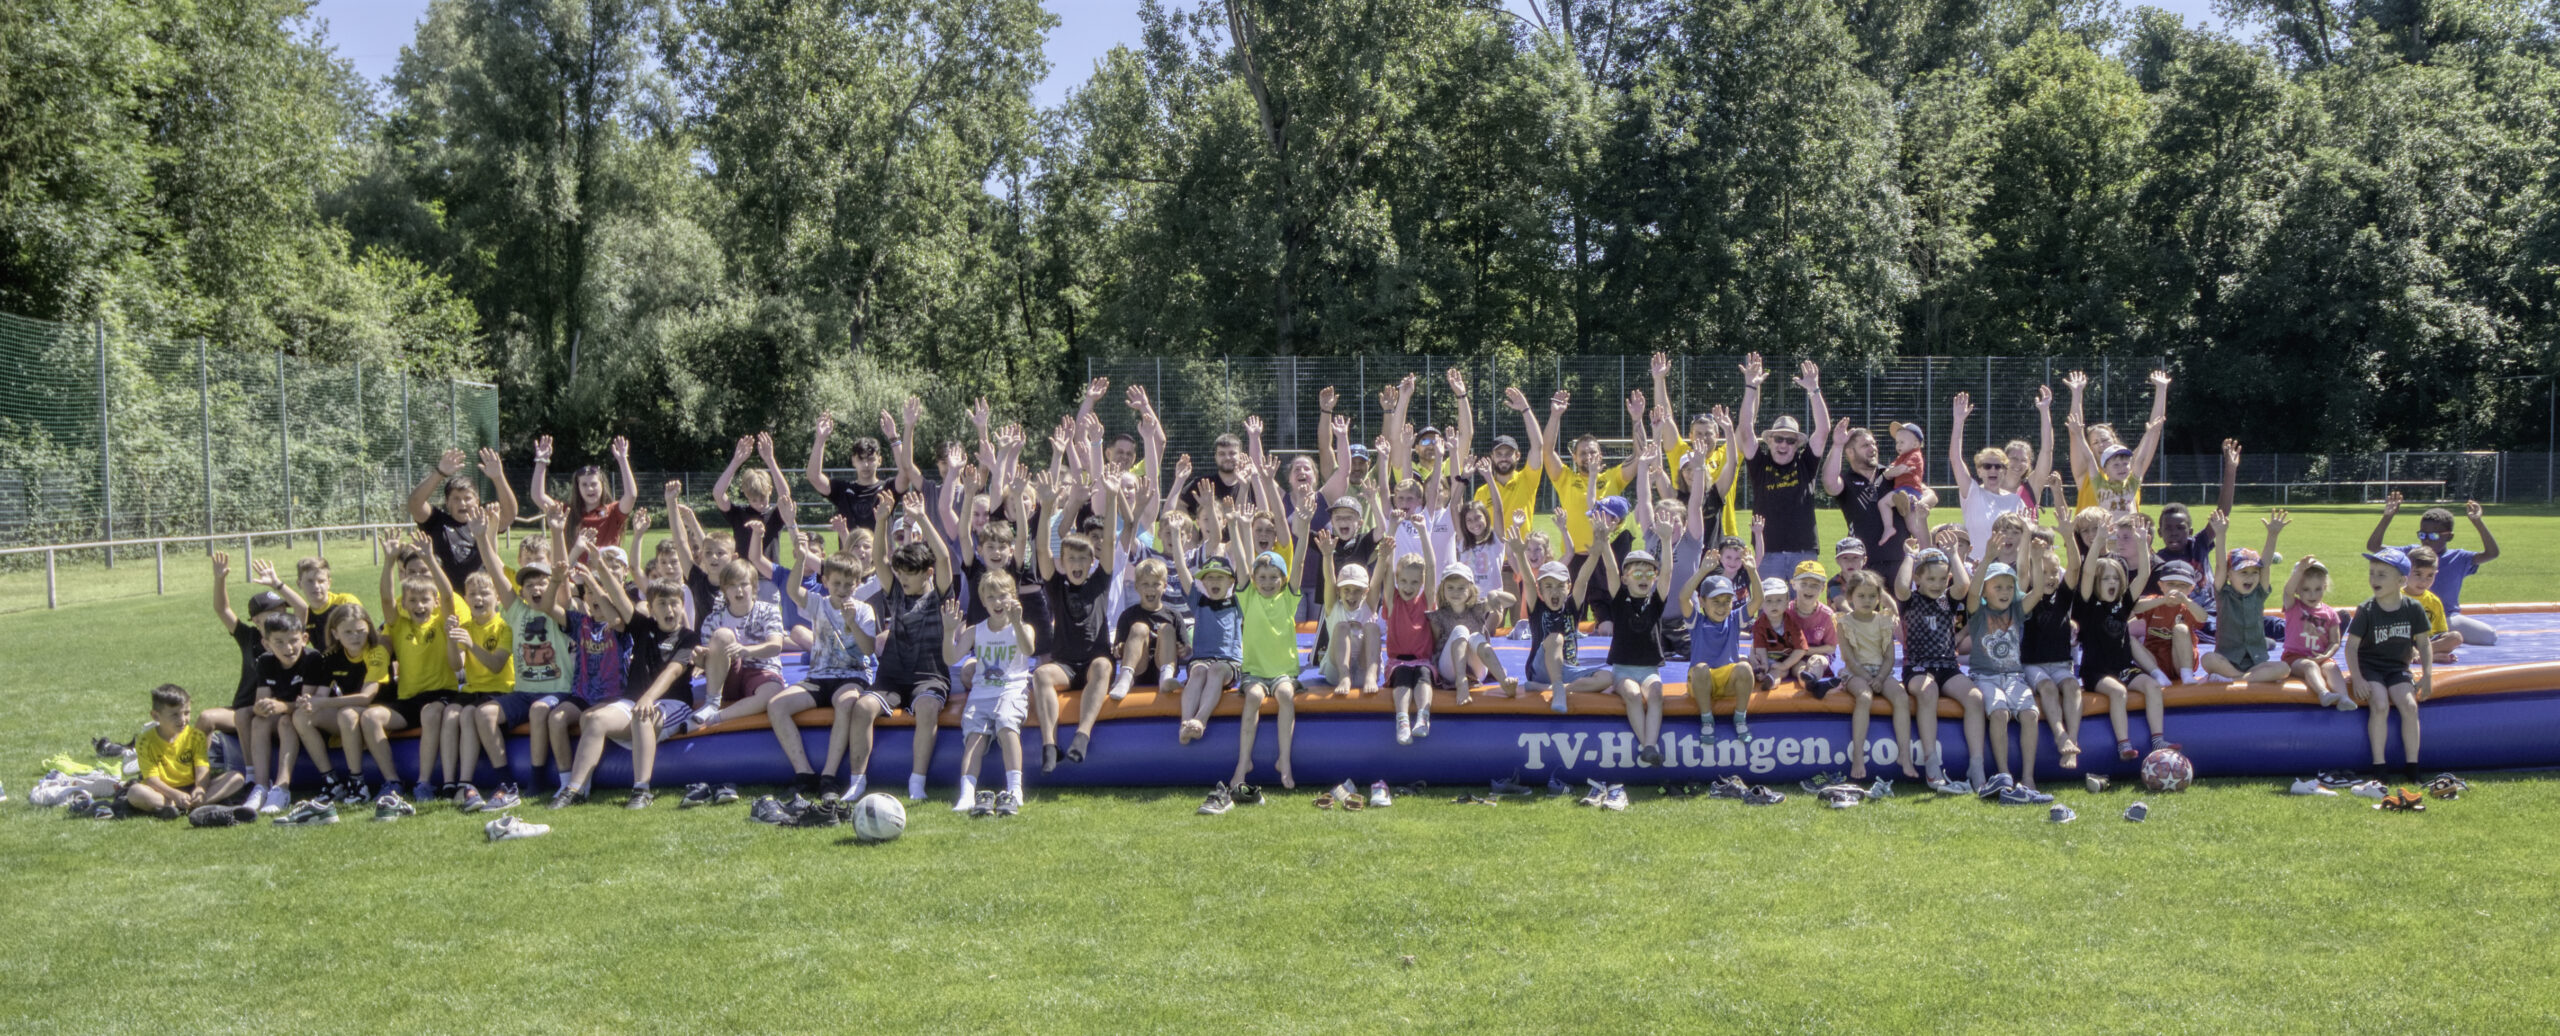 Ein Ort, eine Gemeinschaft – Abschlussfeier der Jugend des TV und FV Haltingen!